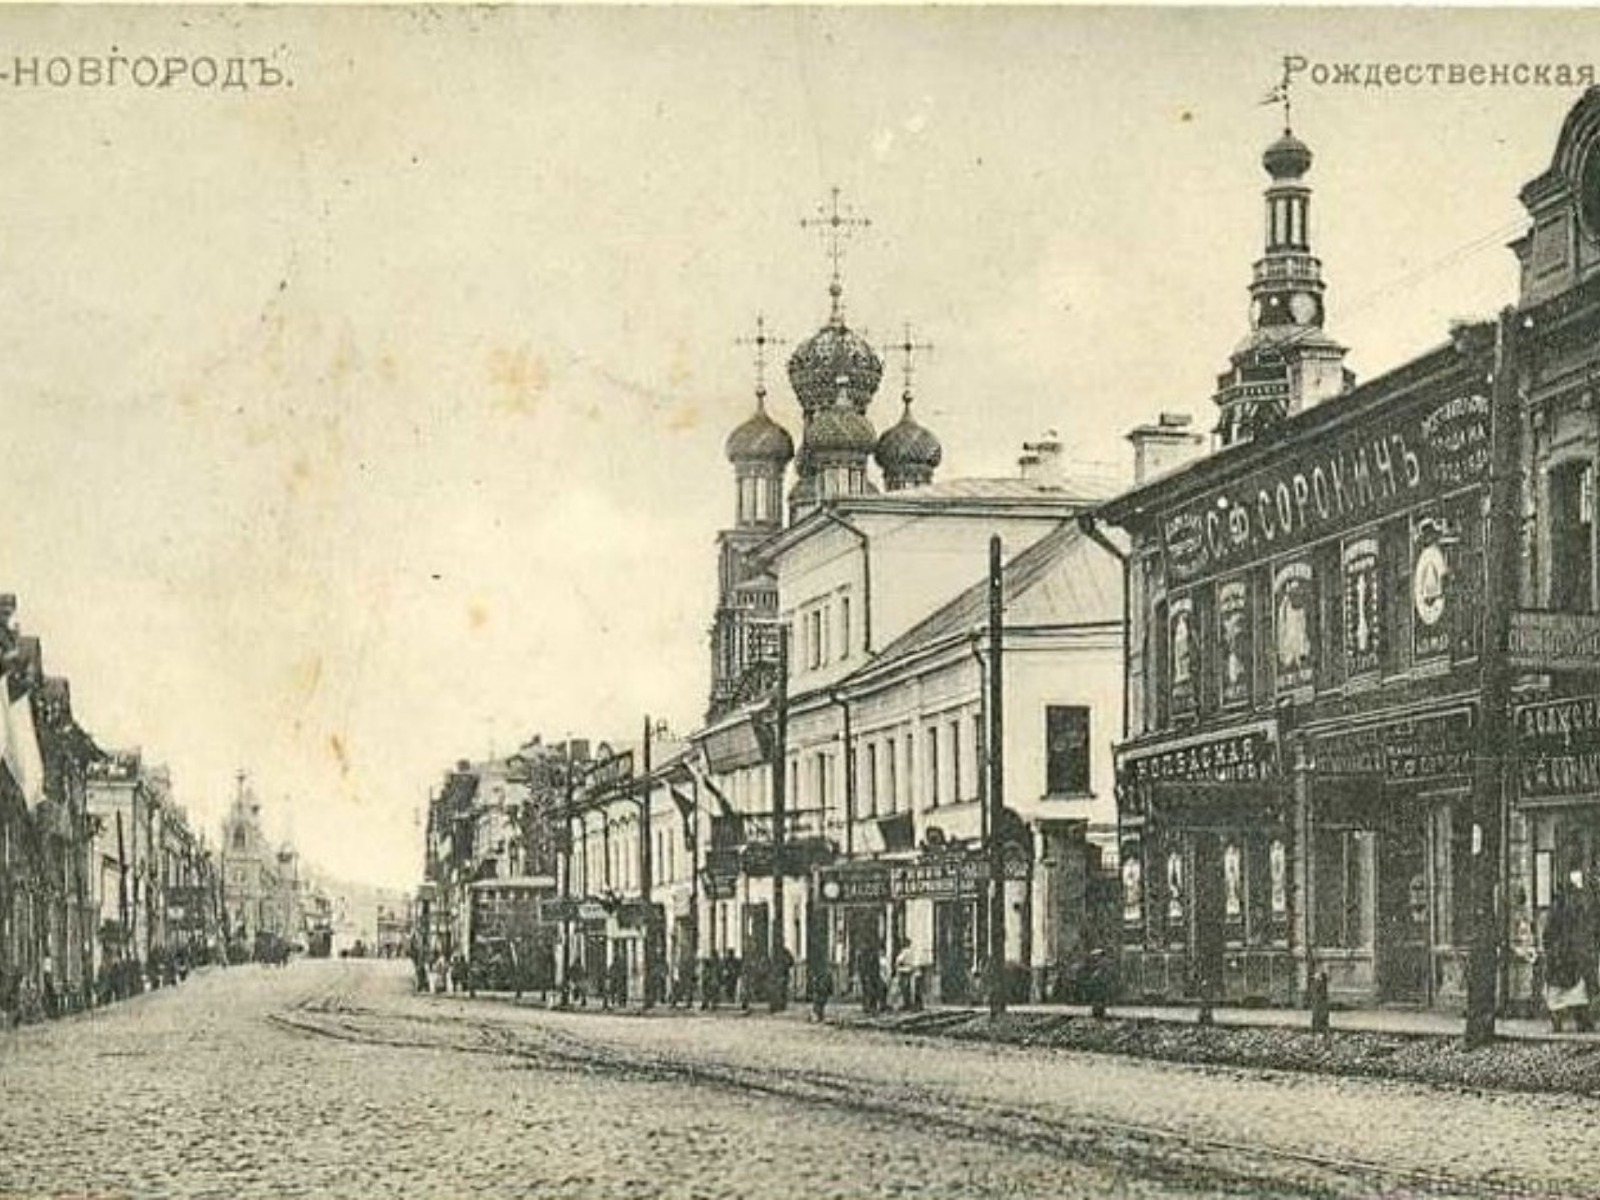 Купеческая Рождественская улица 